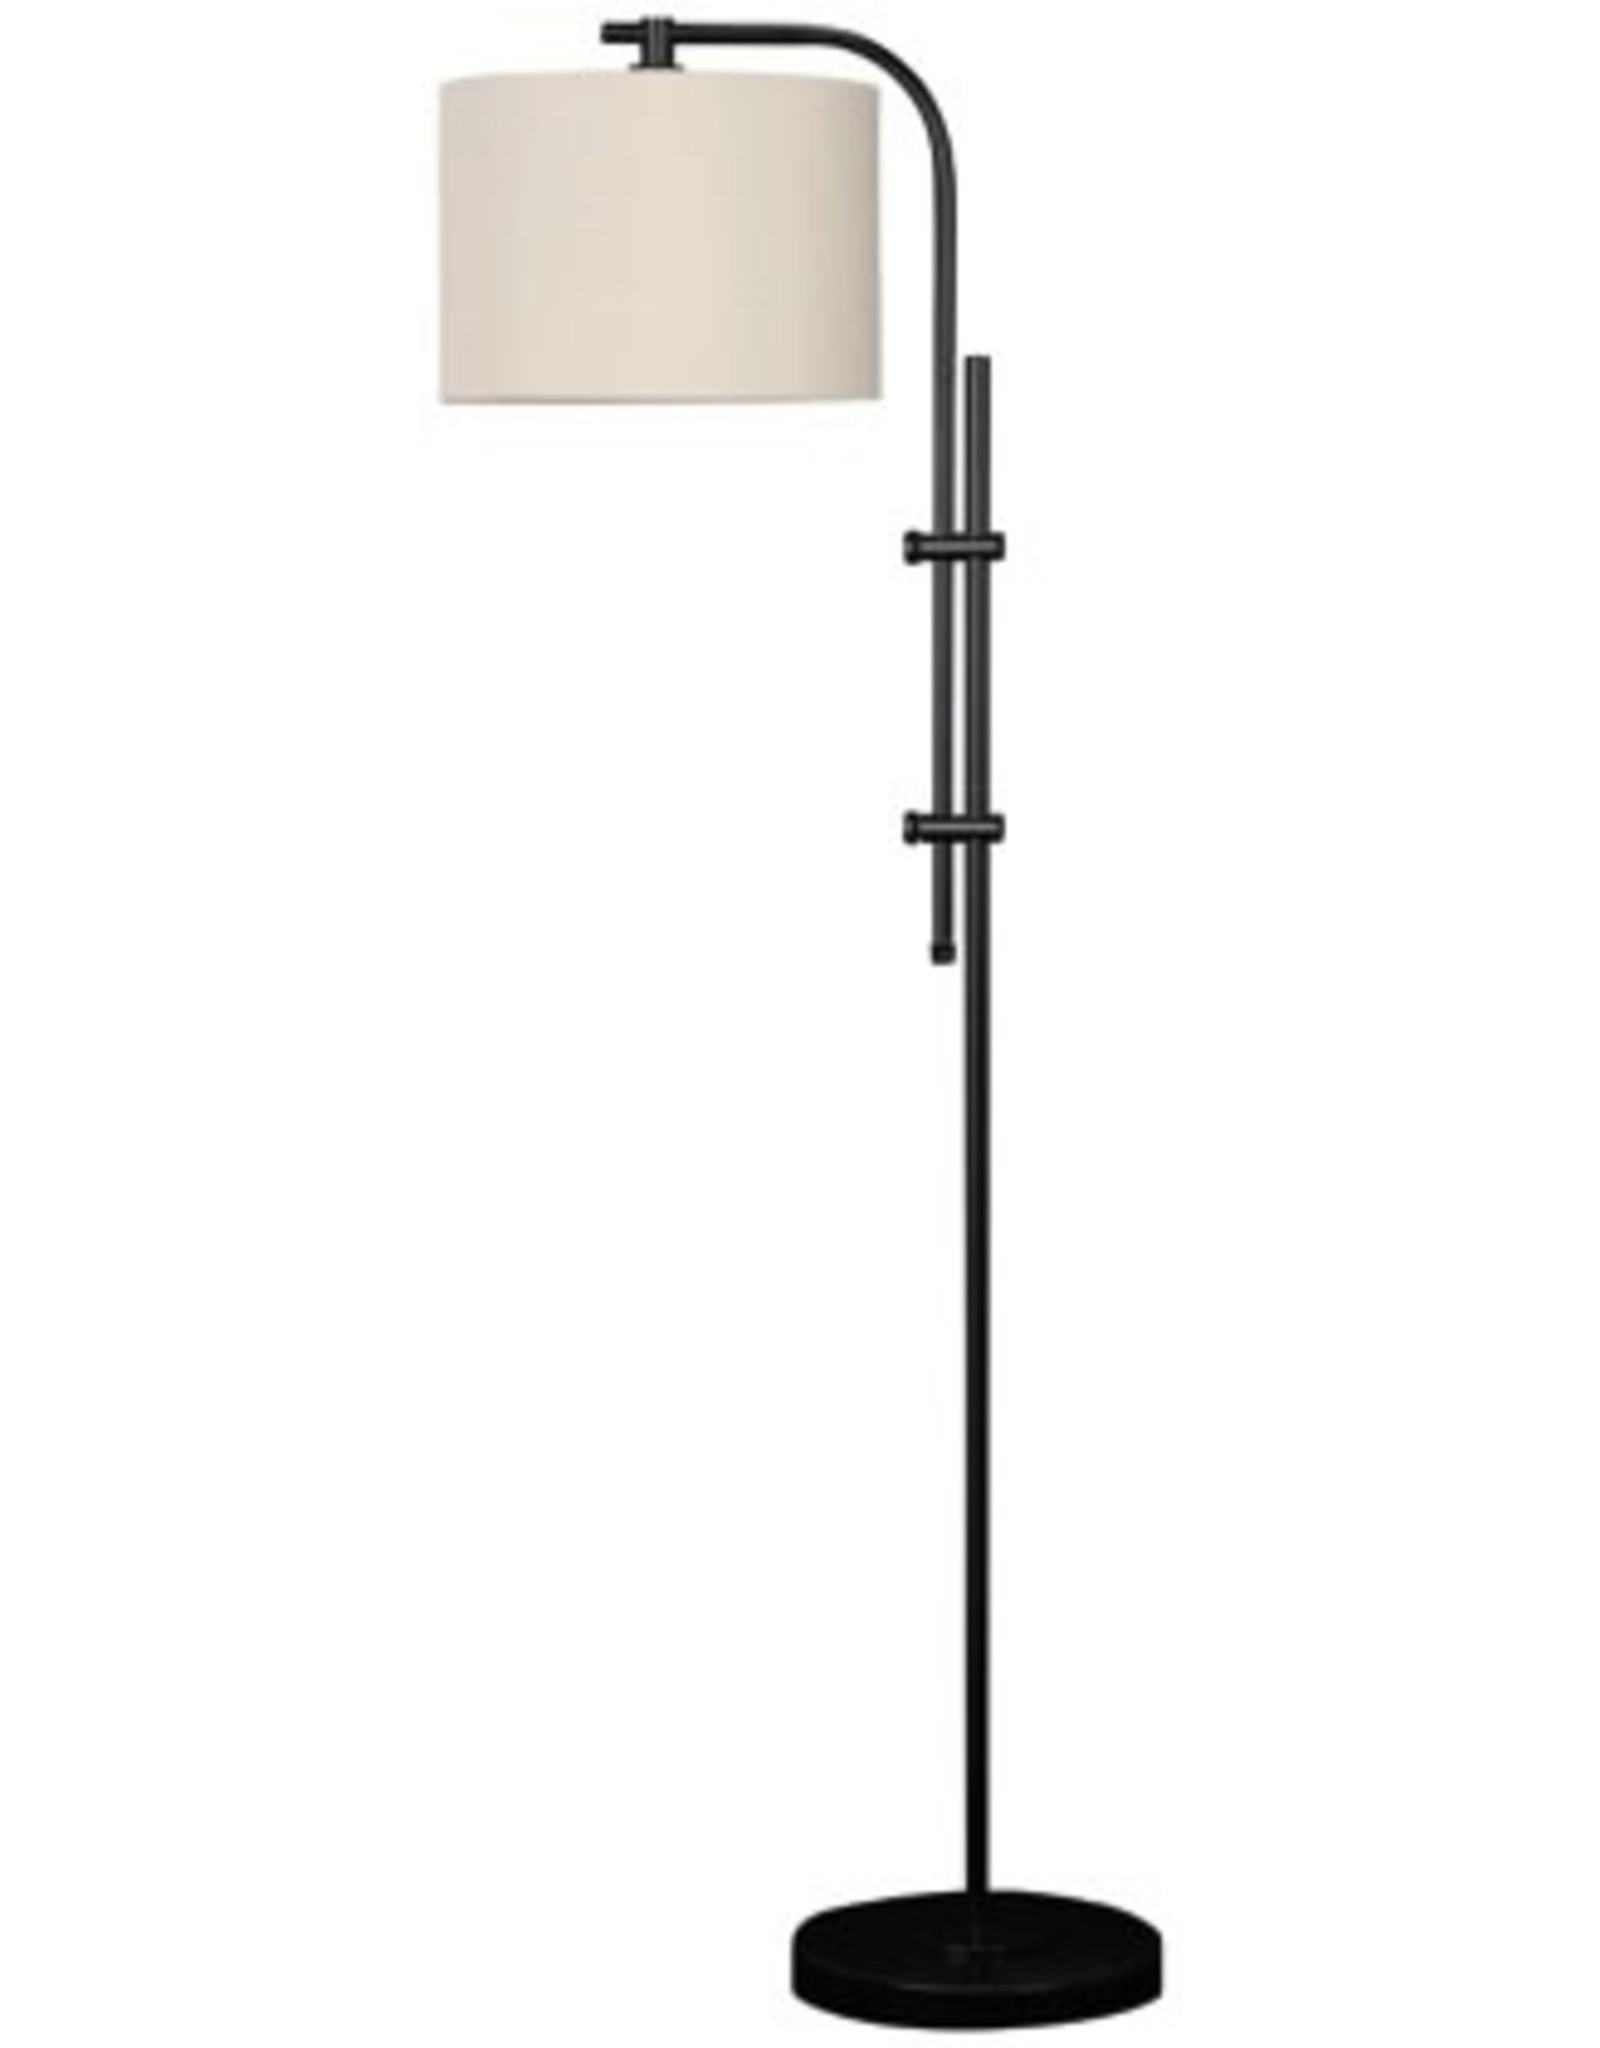 L206041 Metal Floor Lamp